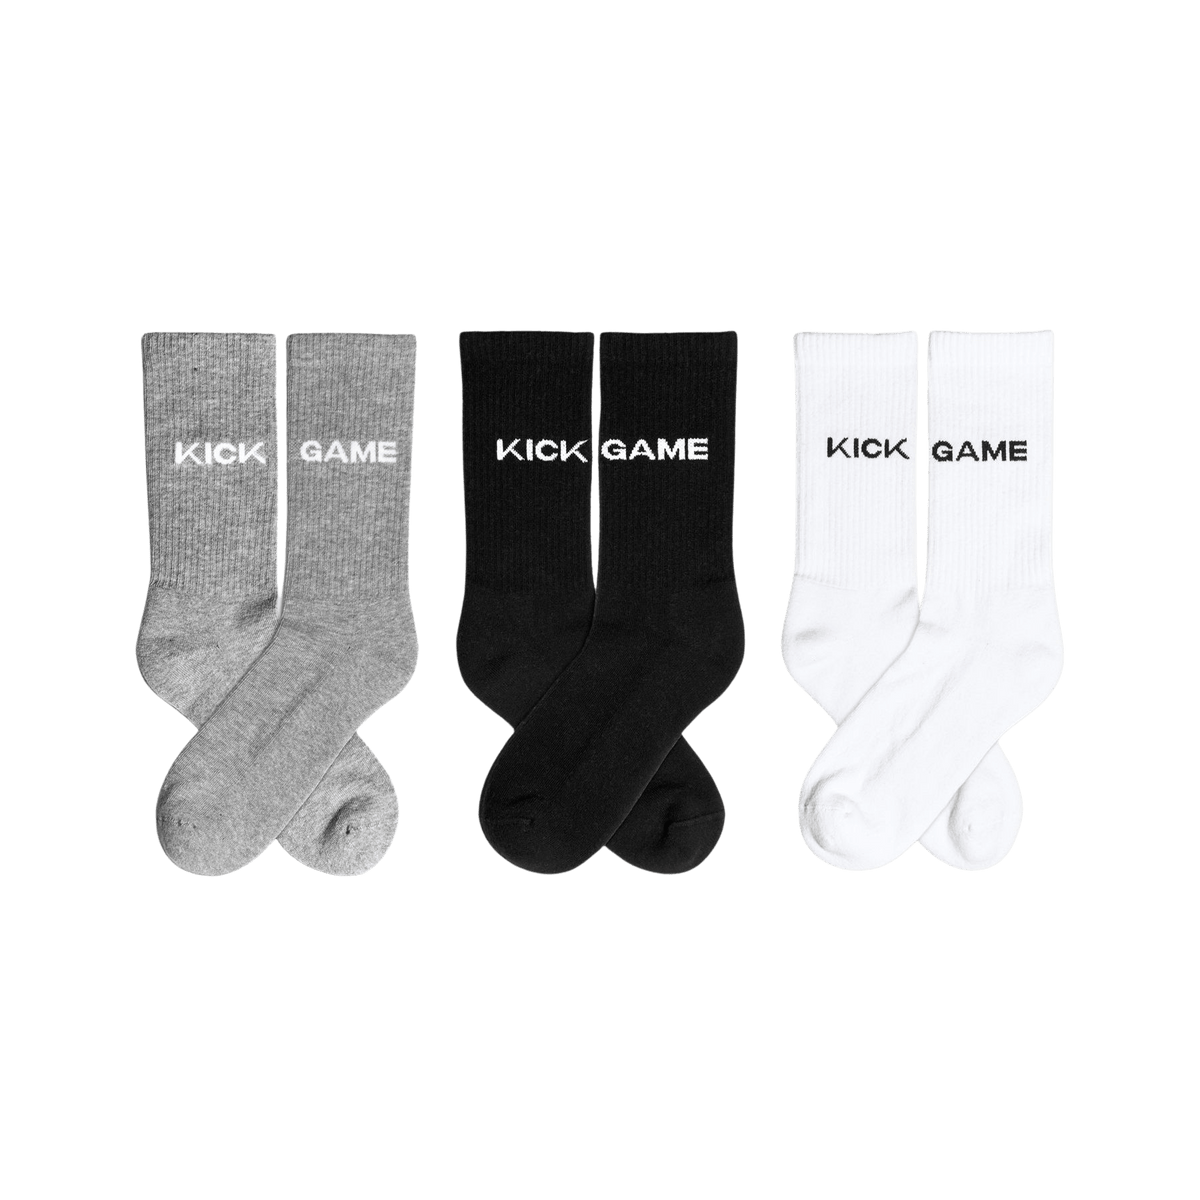 Women's Dark Grey Cabin Thermal Socks-Pack of 3 pairs – BNCO Apparel